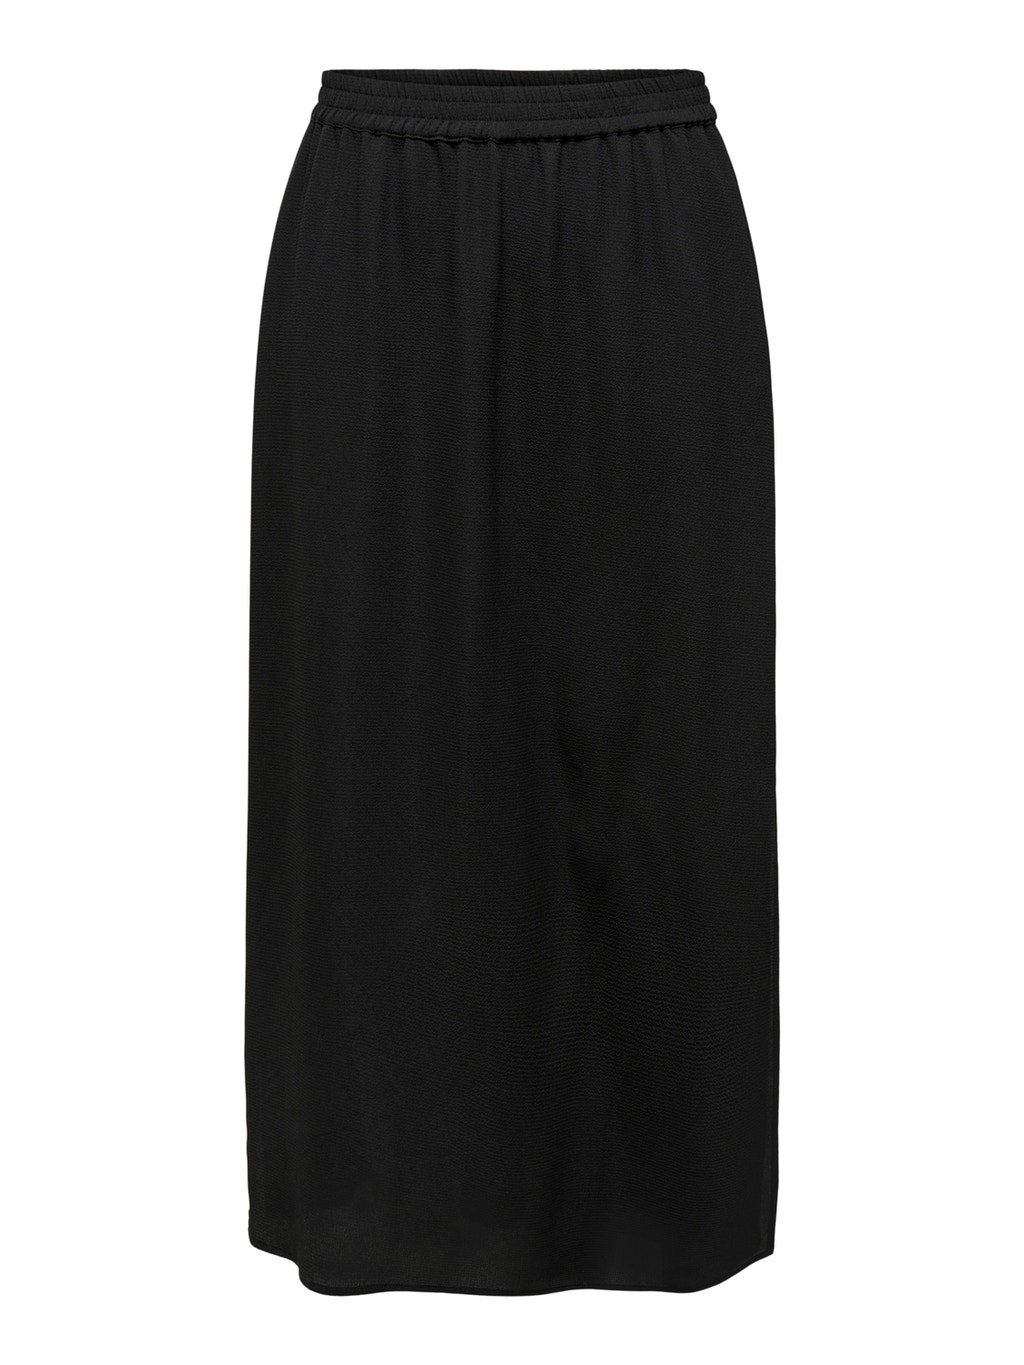 Long slit Skirt | Black | ONLY®